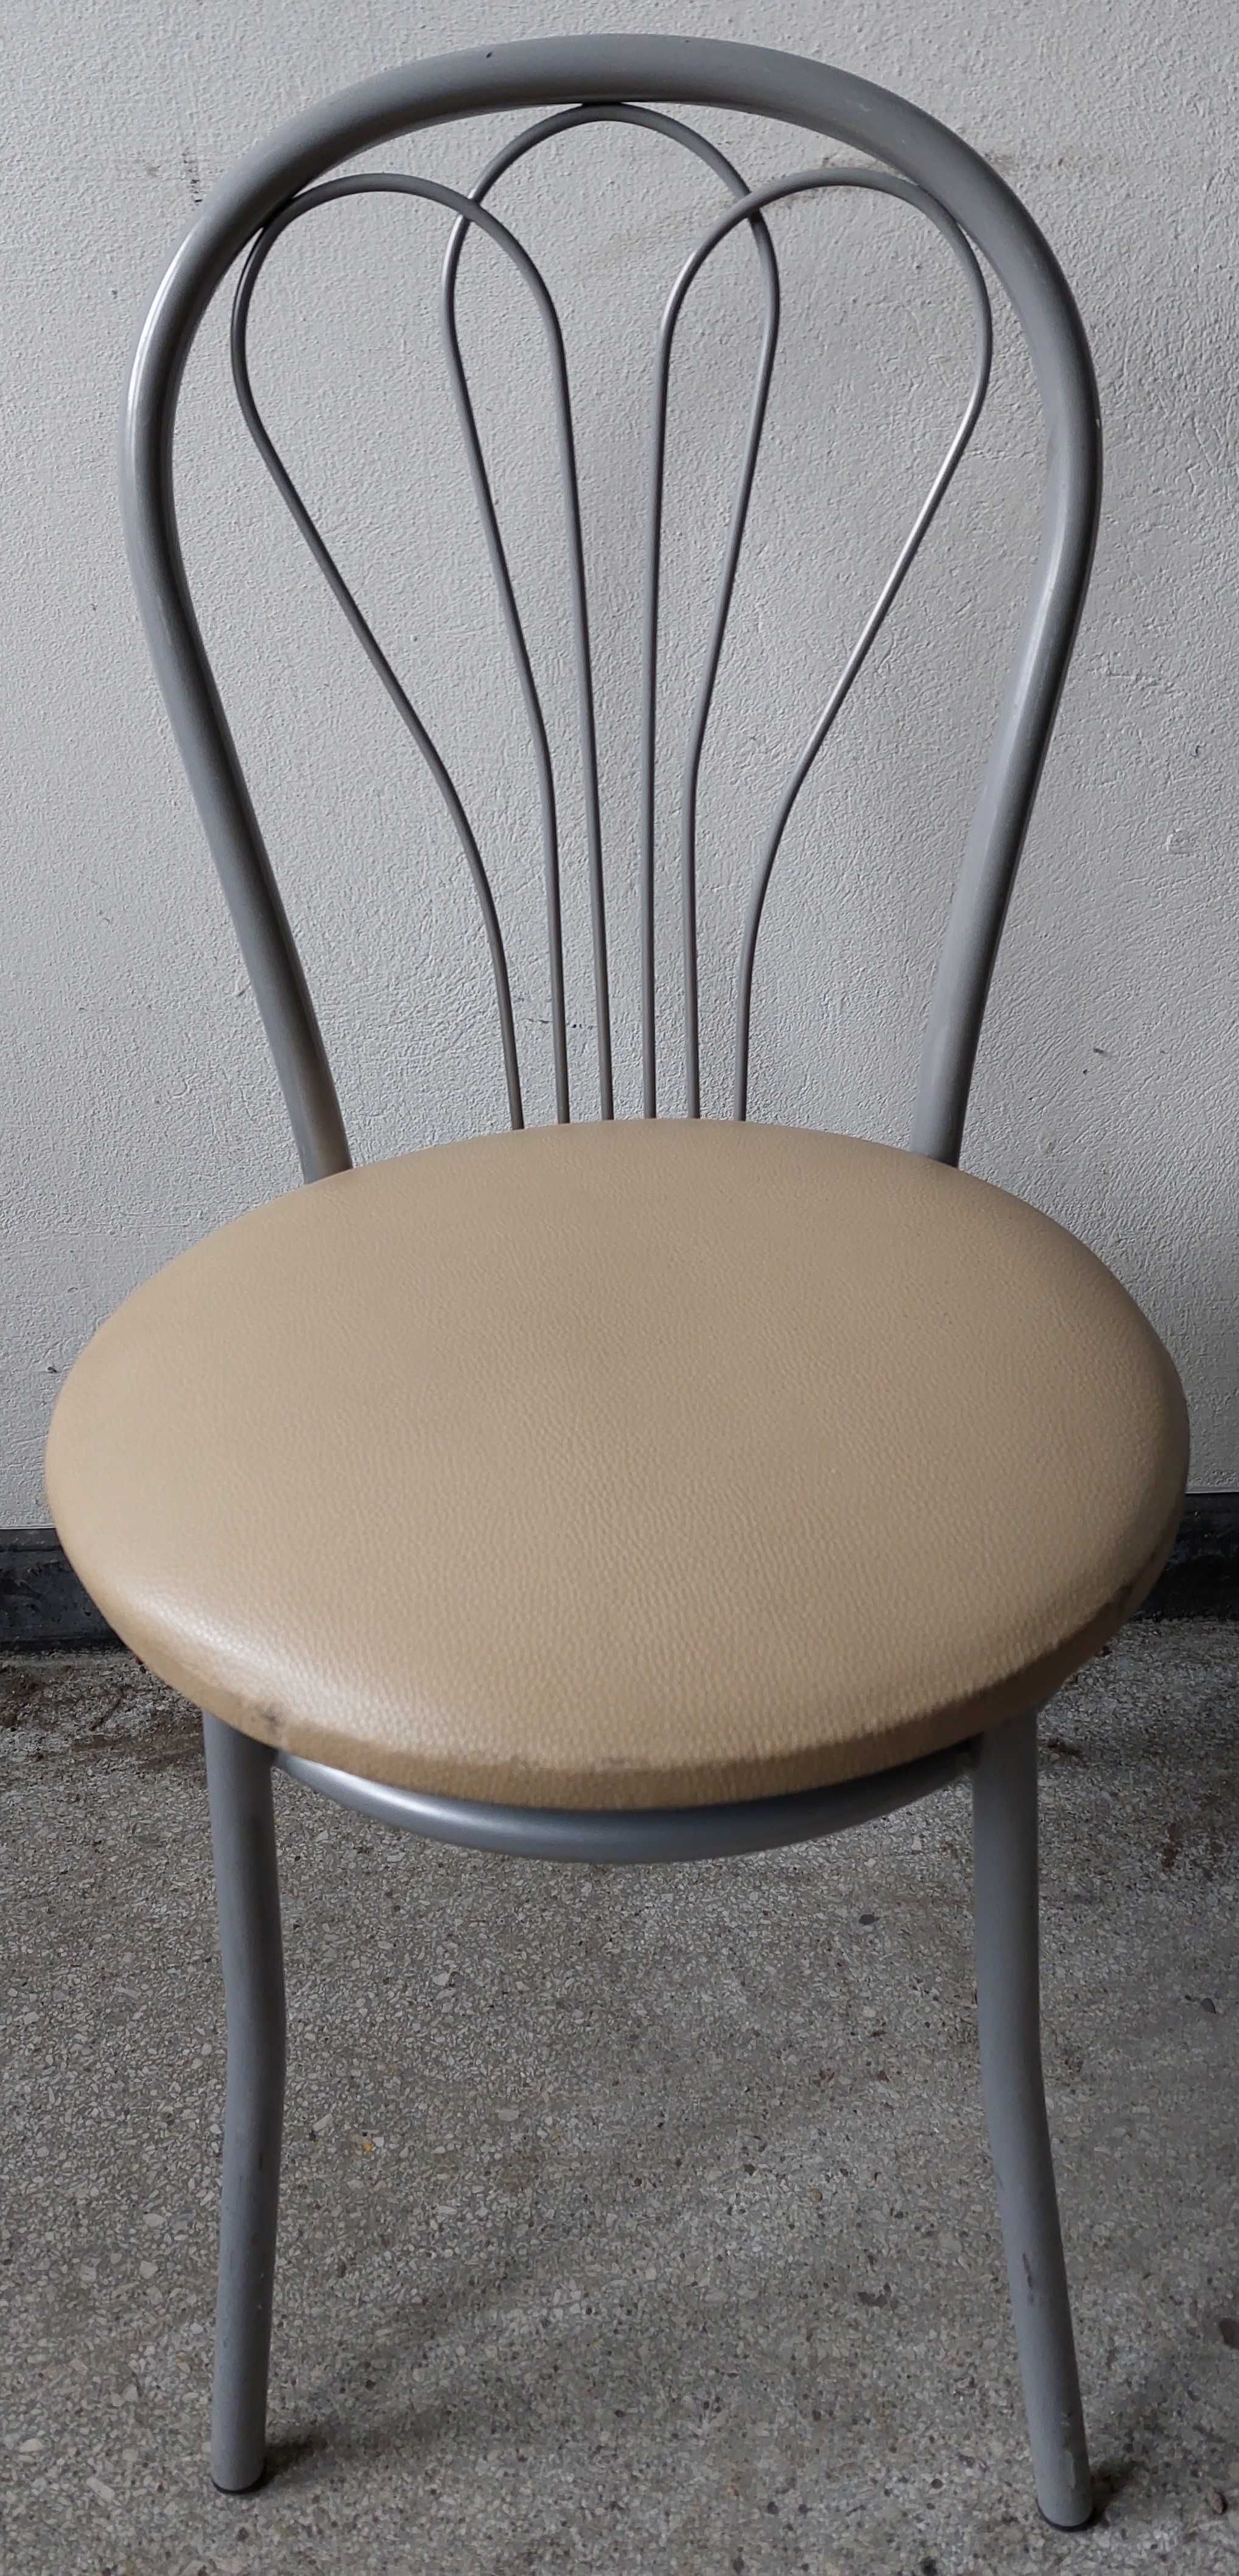 Krzesło kuchenne metalowe - używane, stan dobry